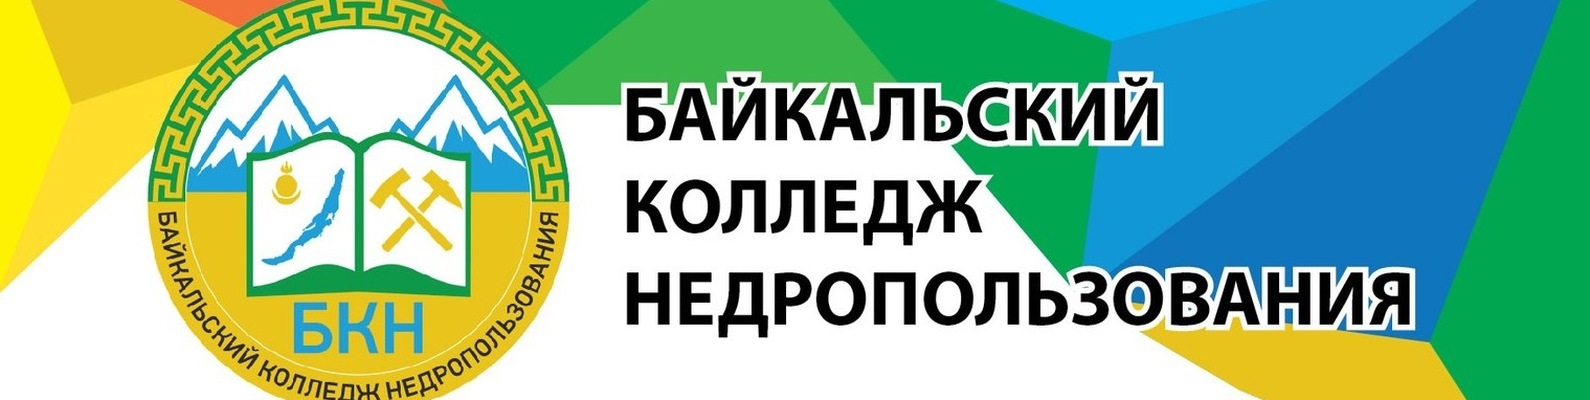 Логотип (Байкальский колледж недропользования)